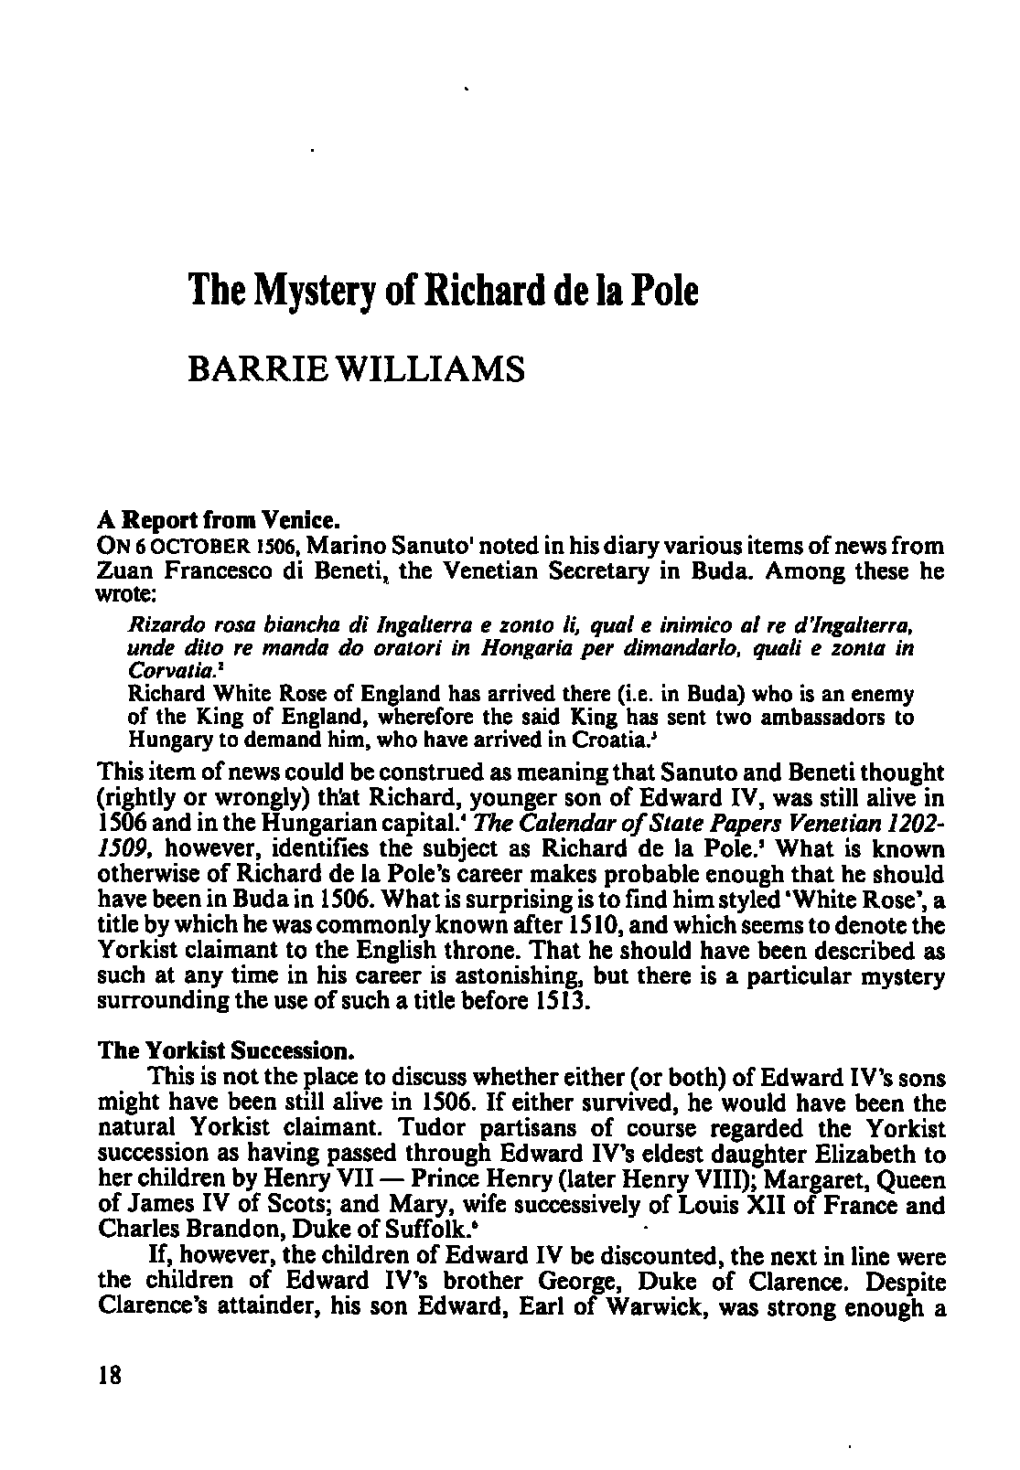 The Mystery of Richardde La Pole